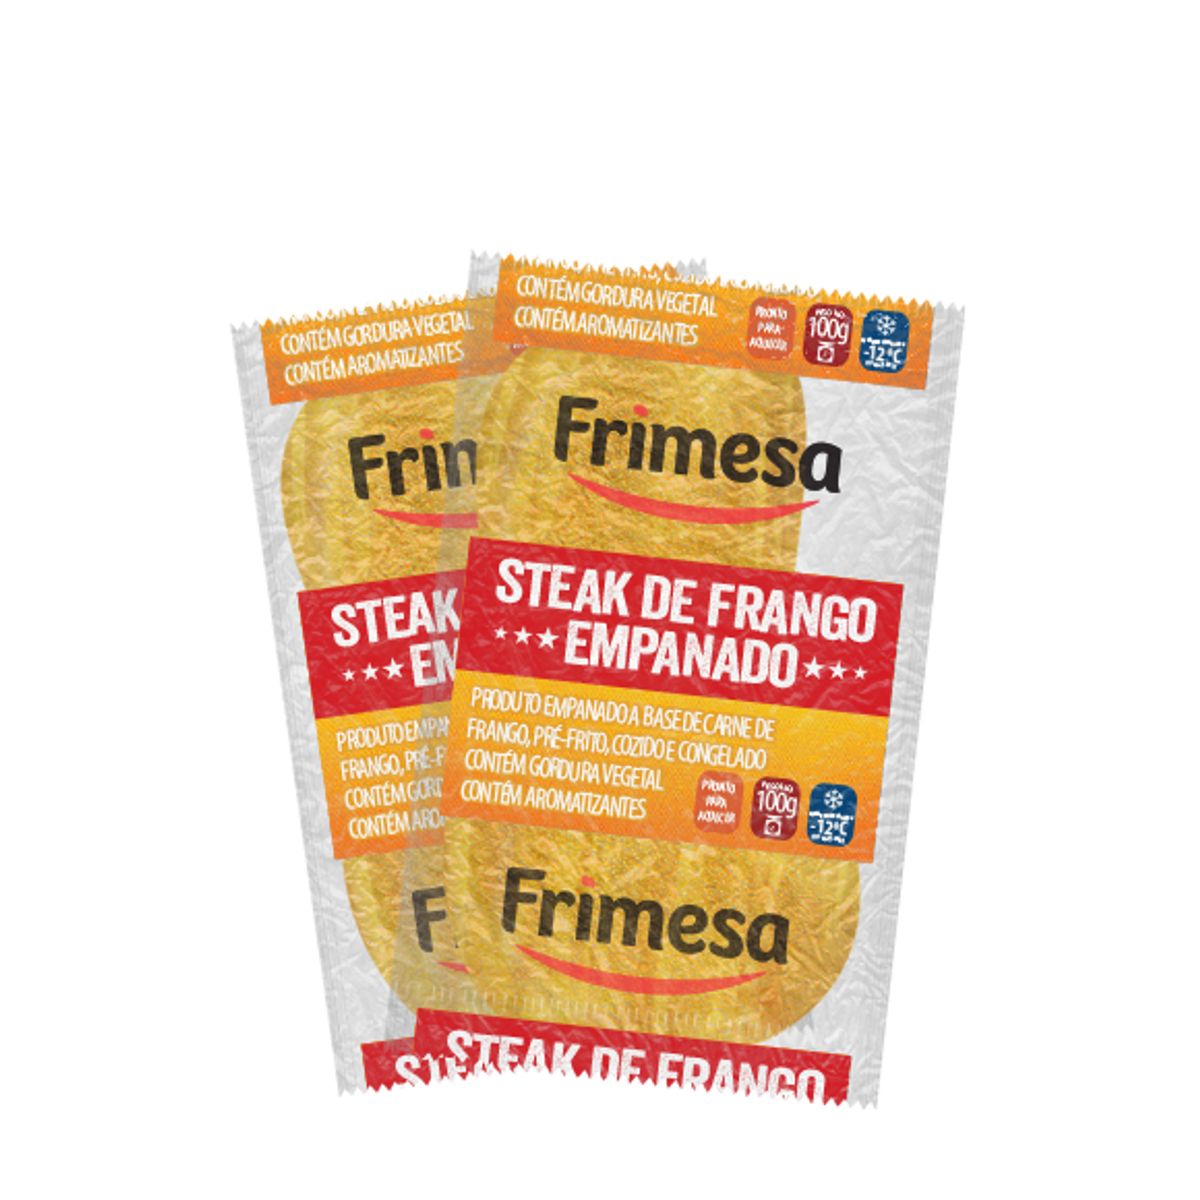 Steak de Frango Empanado Congelado Frimesa 100g image number 0